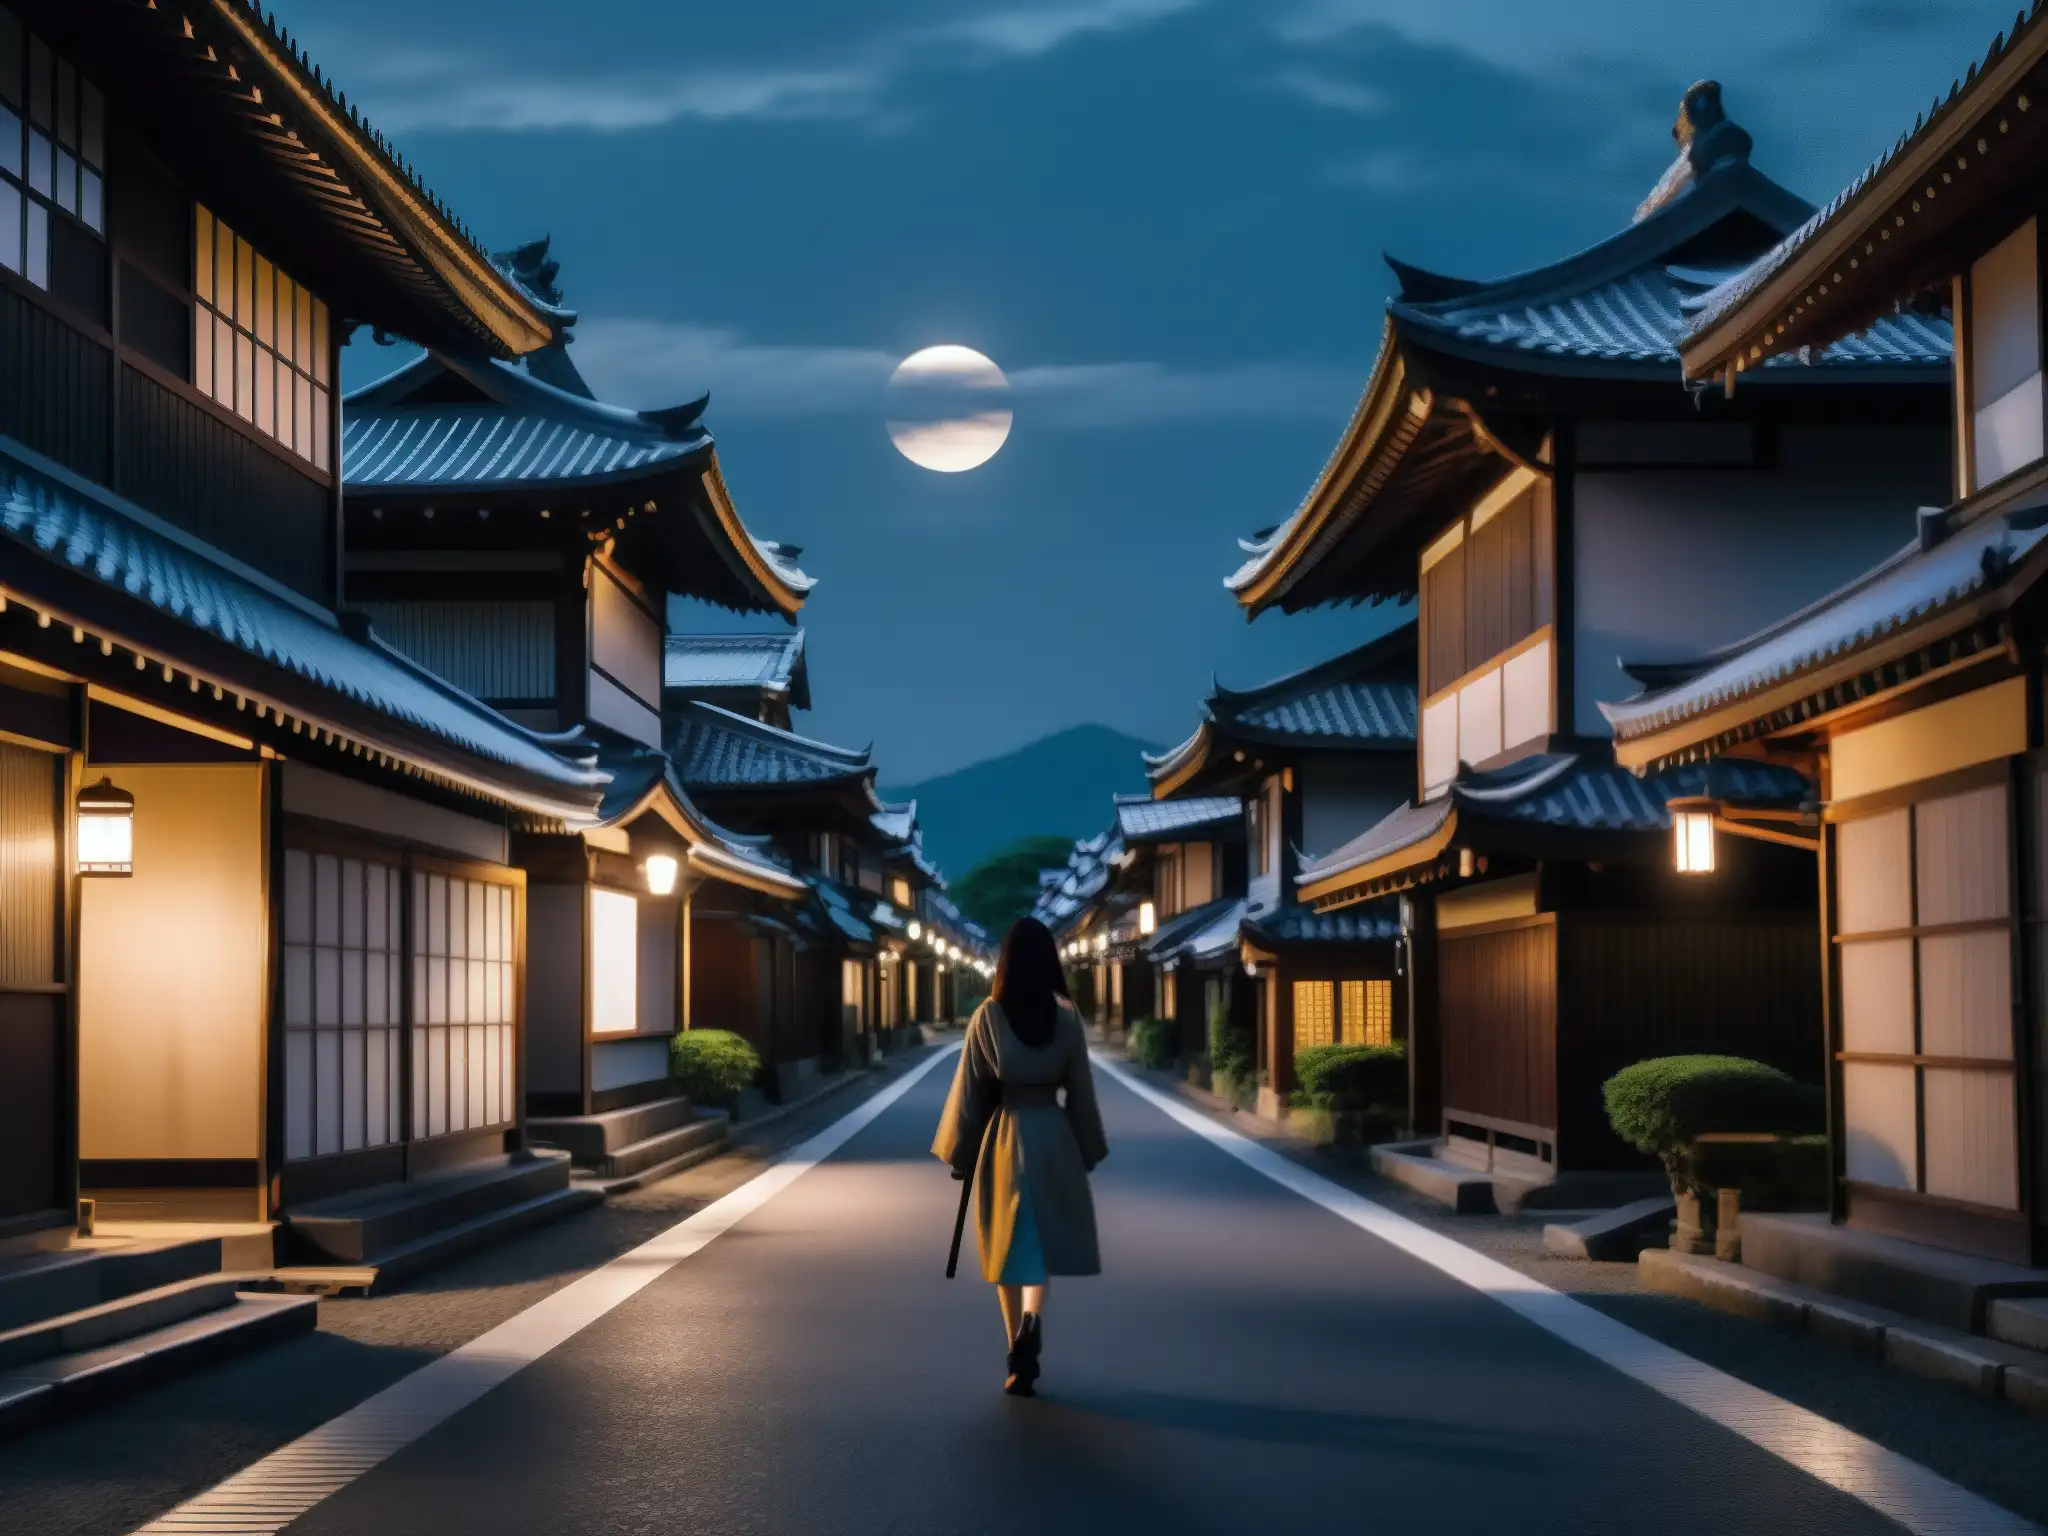 En una lúgubre calle iluminada por la luna en Japón, una figura siniestra se desplaza con velocidad sobrenatural